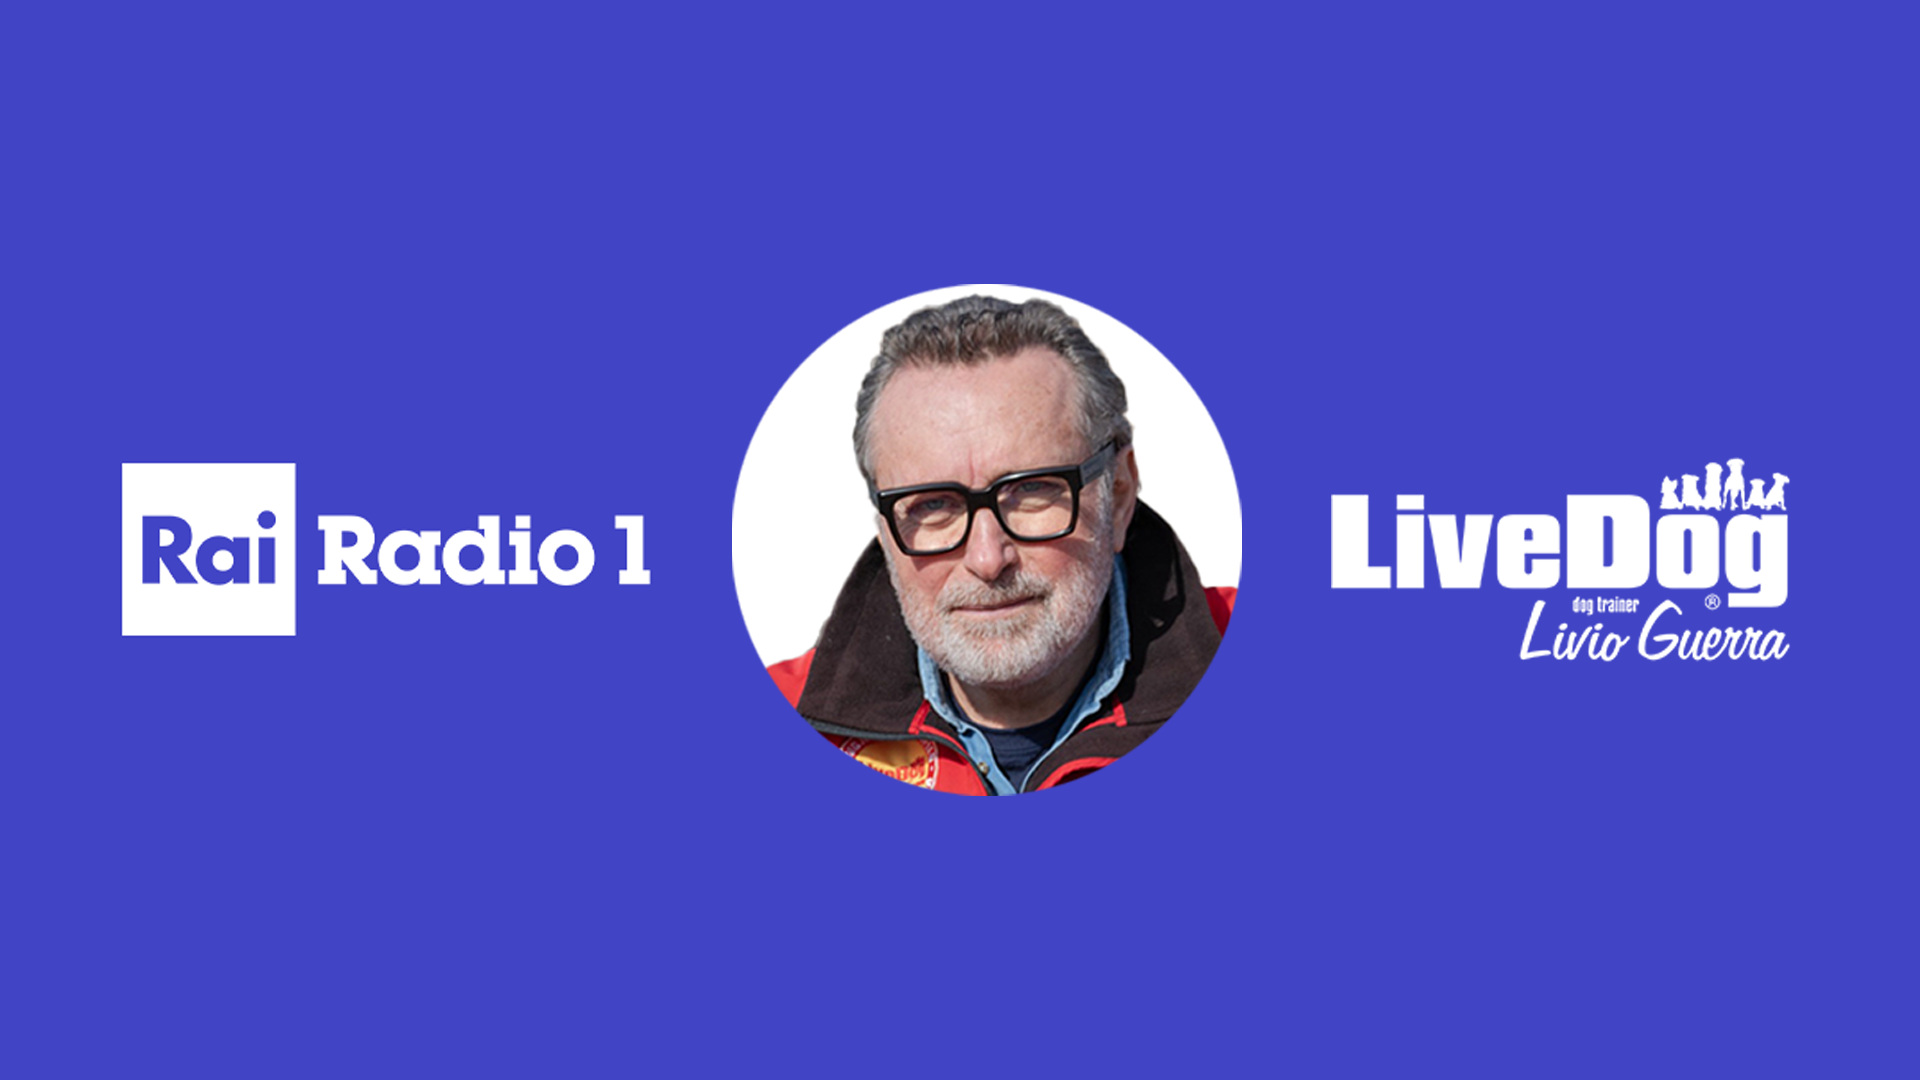 Un uomo di mezza età con gli occhiali e il giubbotto è raffigurato tra il logo di Rai Radio 1 e il logo di LiveDog by trainer Livio Guerra su sfondo blu.